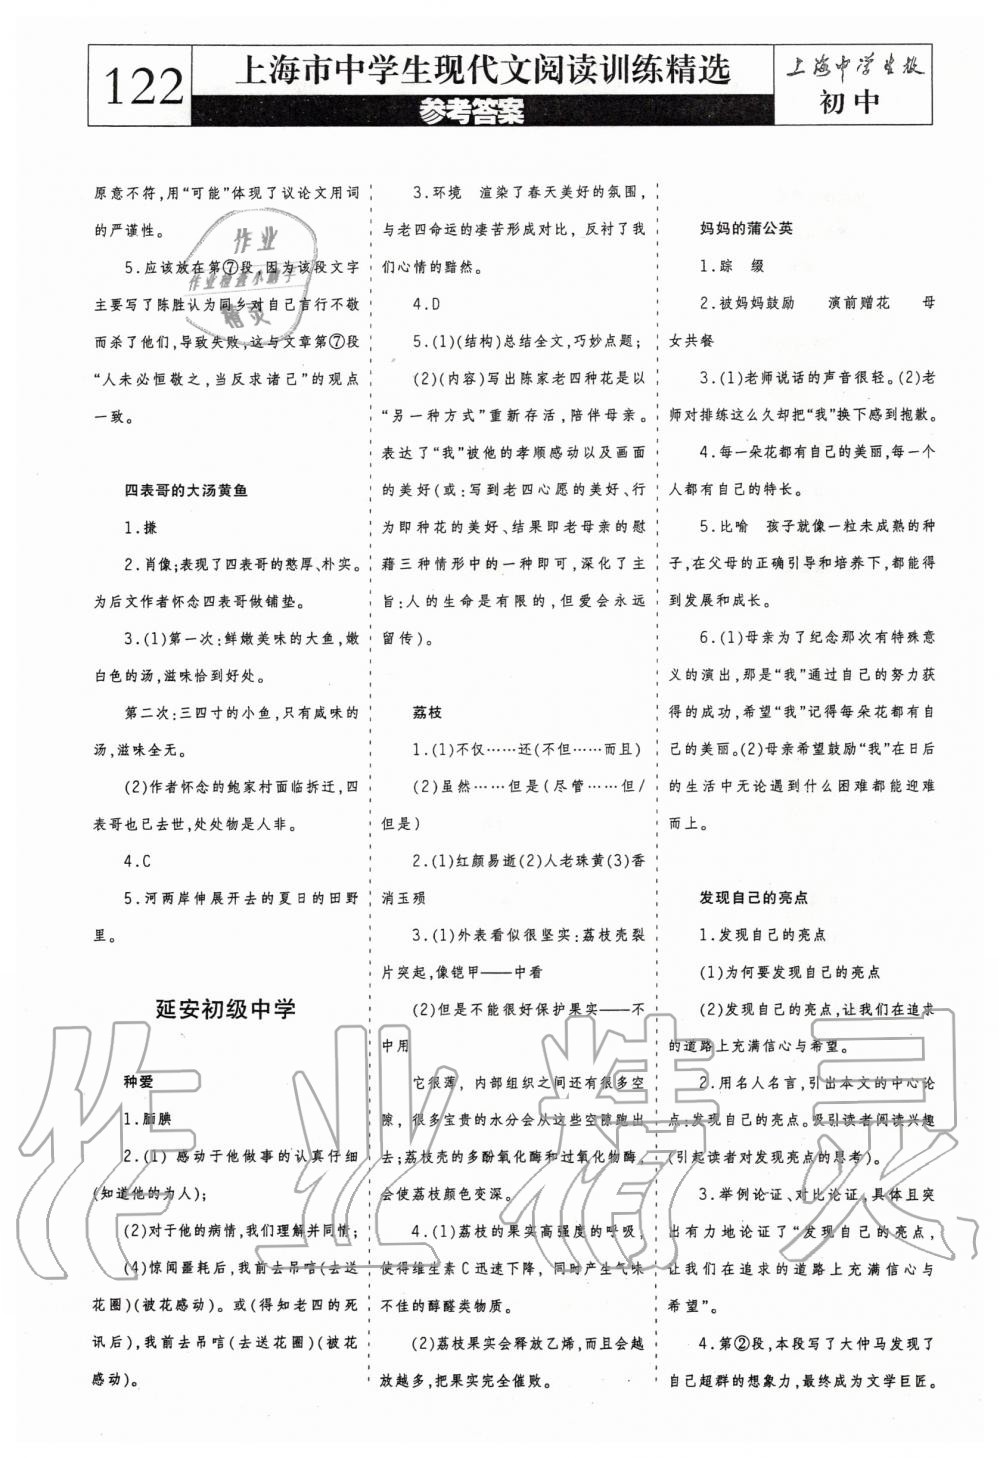 2019年上海中学生报现代文阅读训练精选读本初中卷 第4页